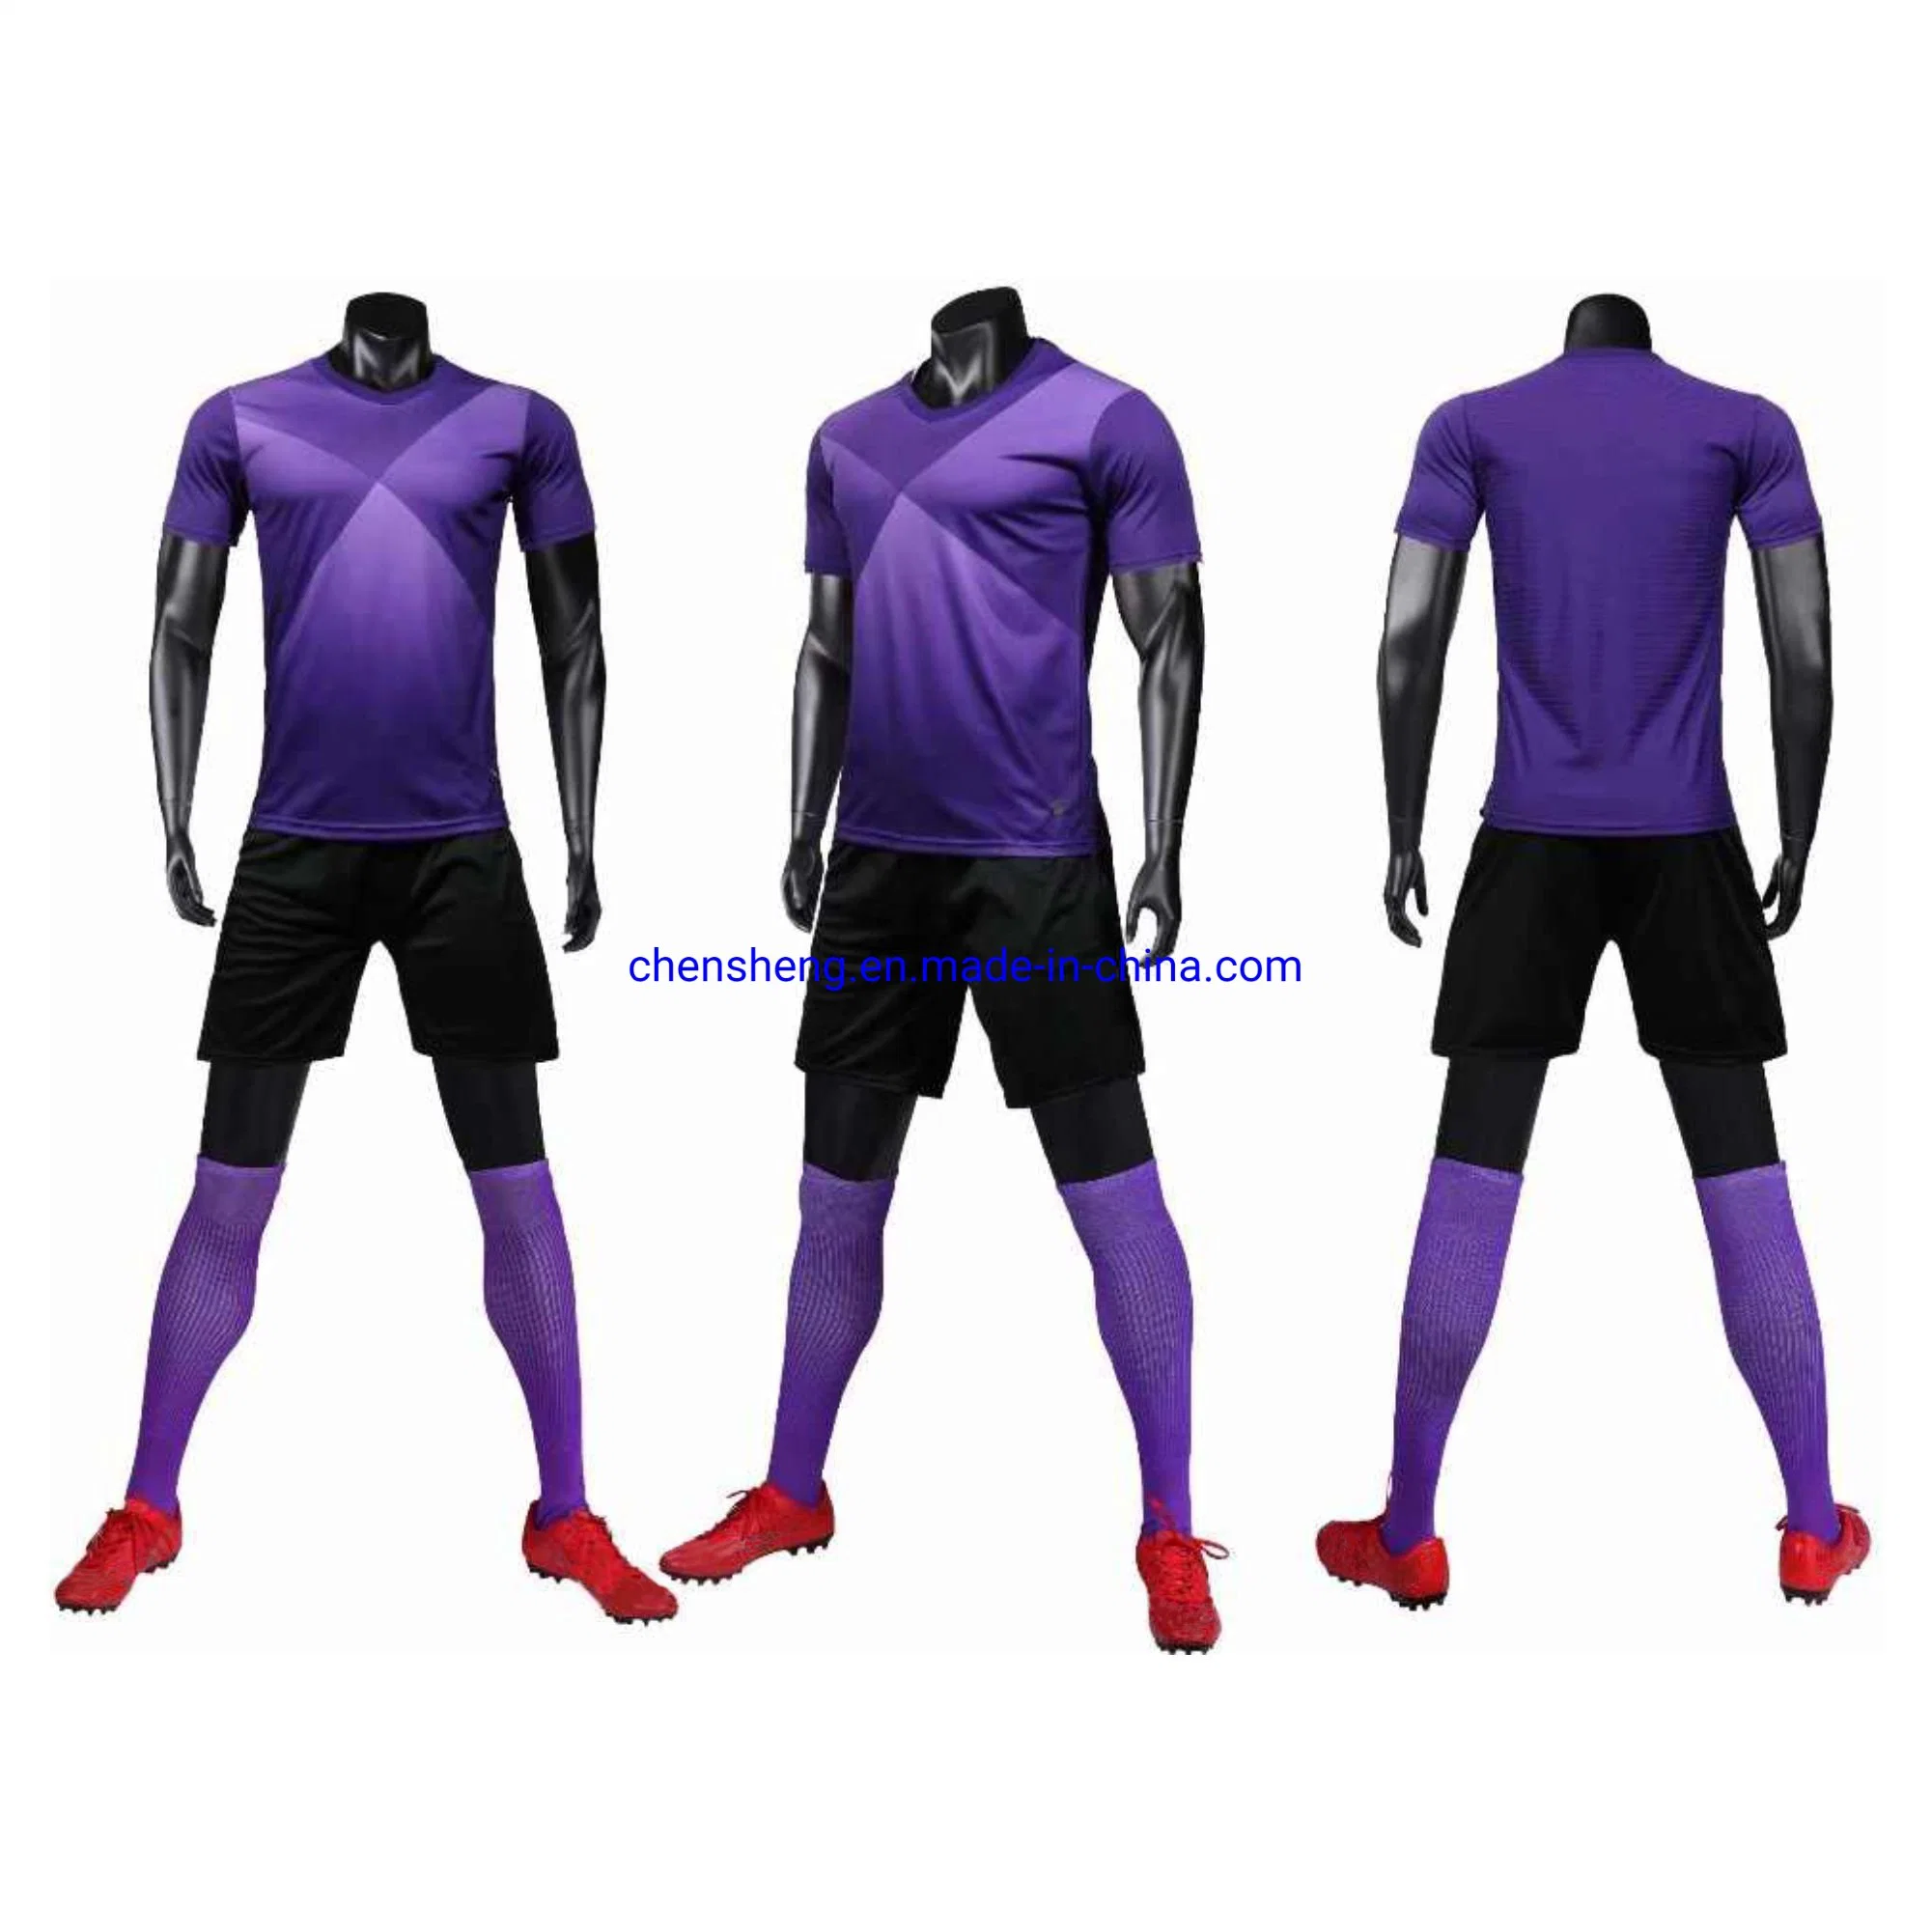 A equipa de futebol de impressão personalizado Esportes uniforme futebol Jersey Jersey projeta o desgaste de futebol